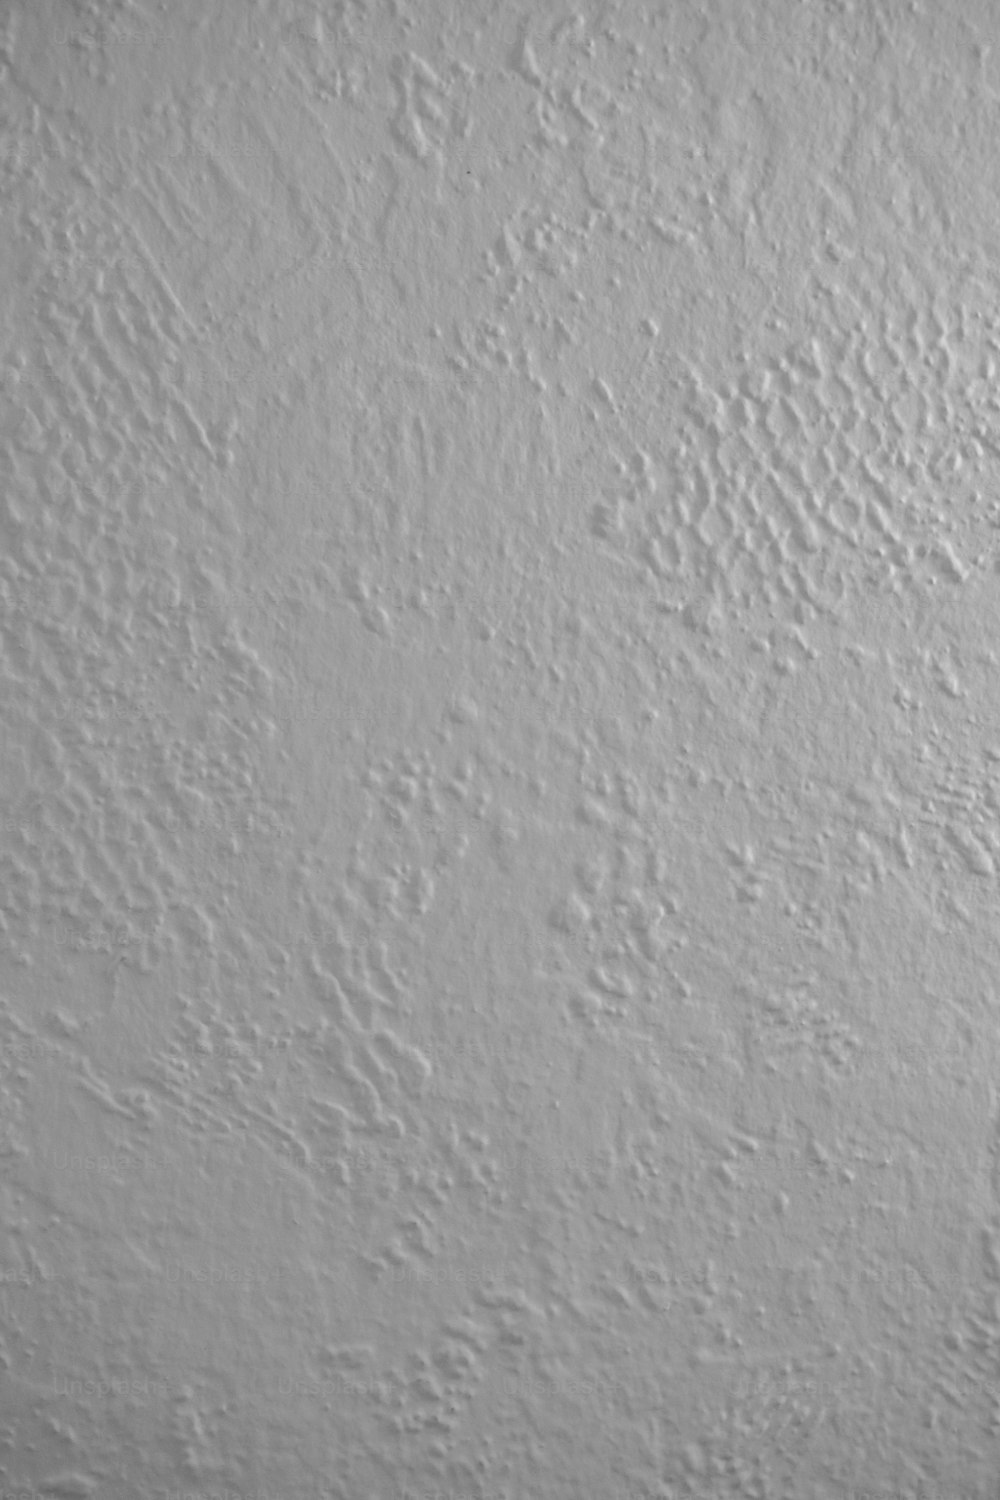 une photo en noir et blanc d’un mur blanc